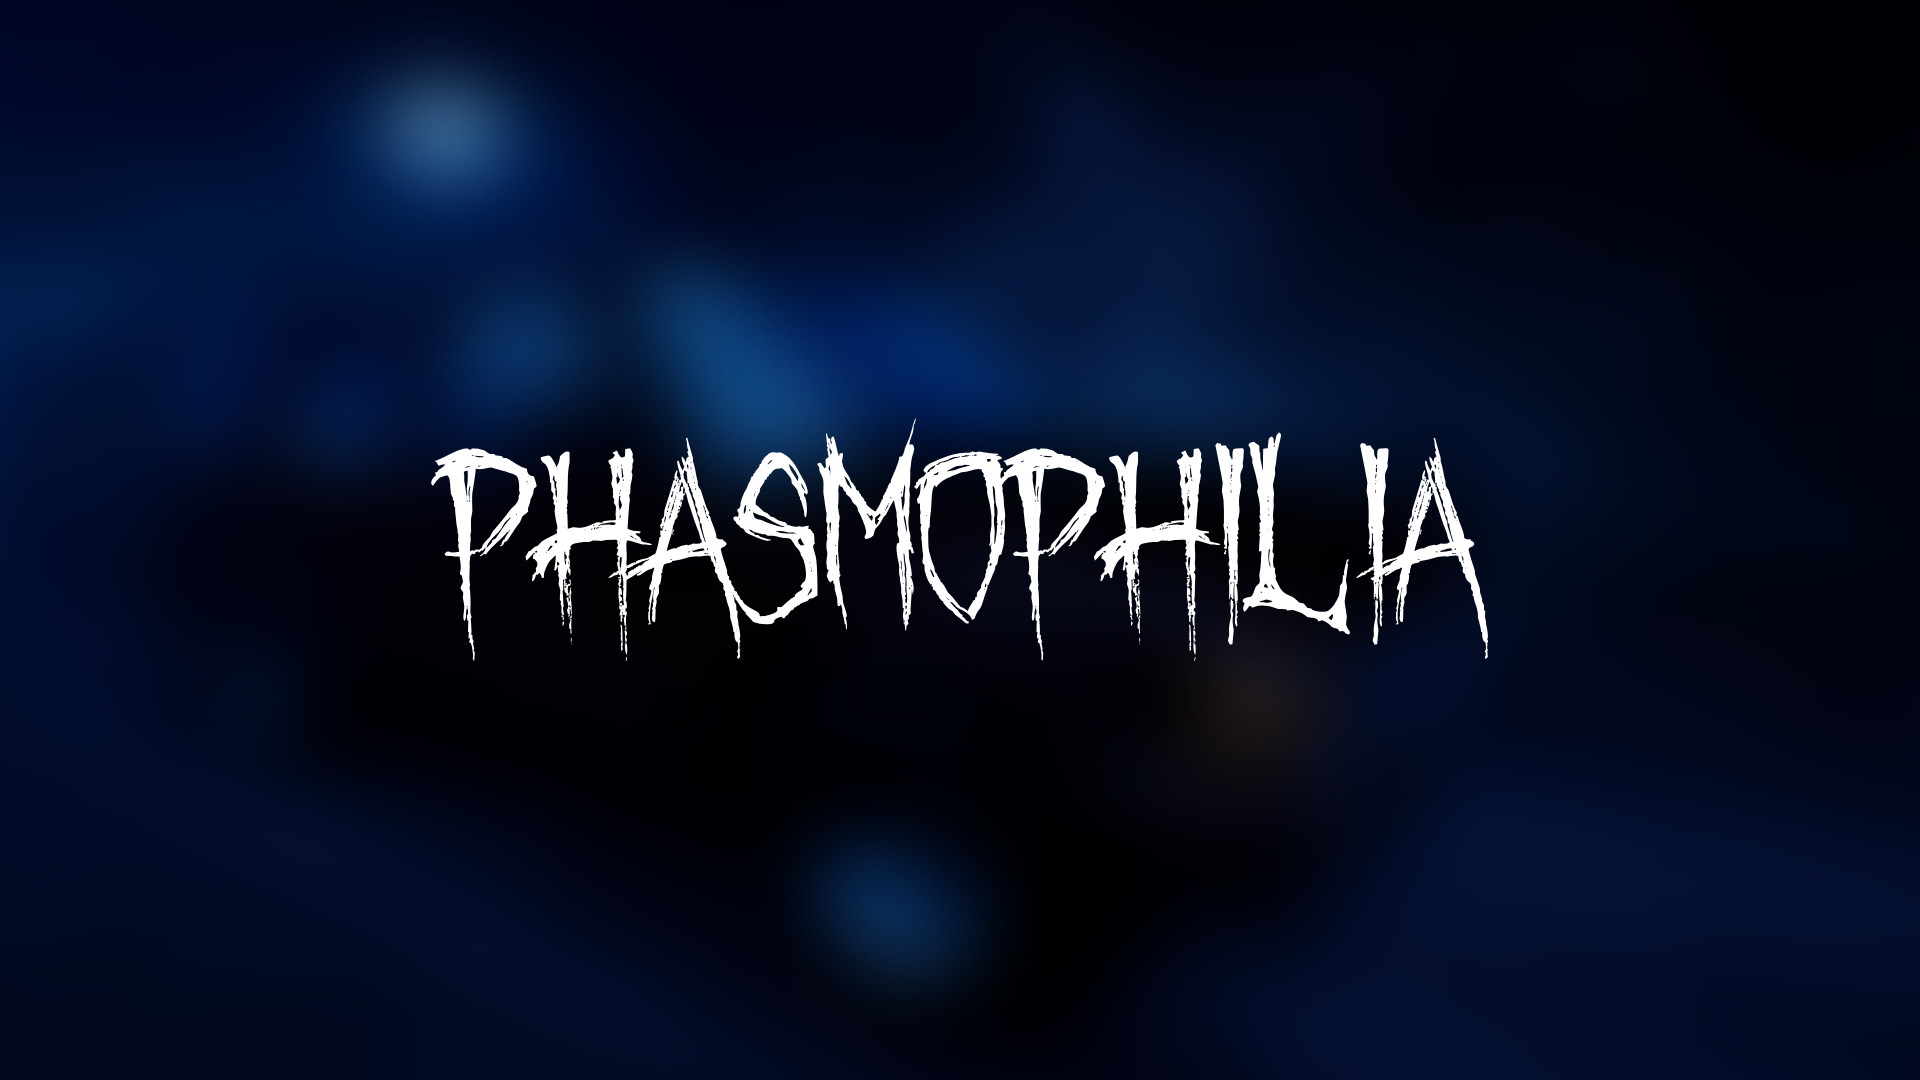 Phasmophilia